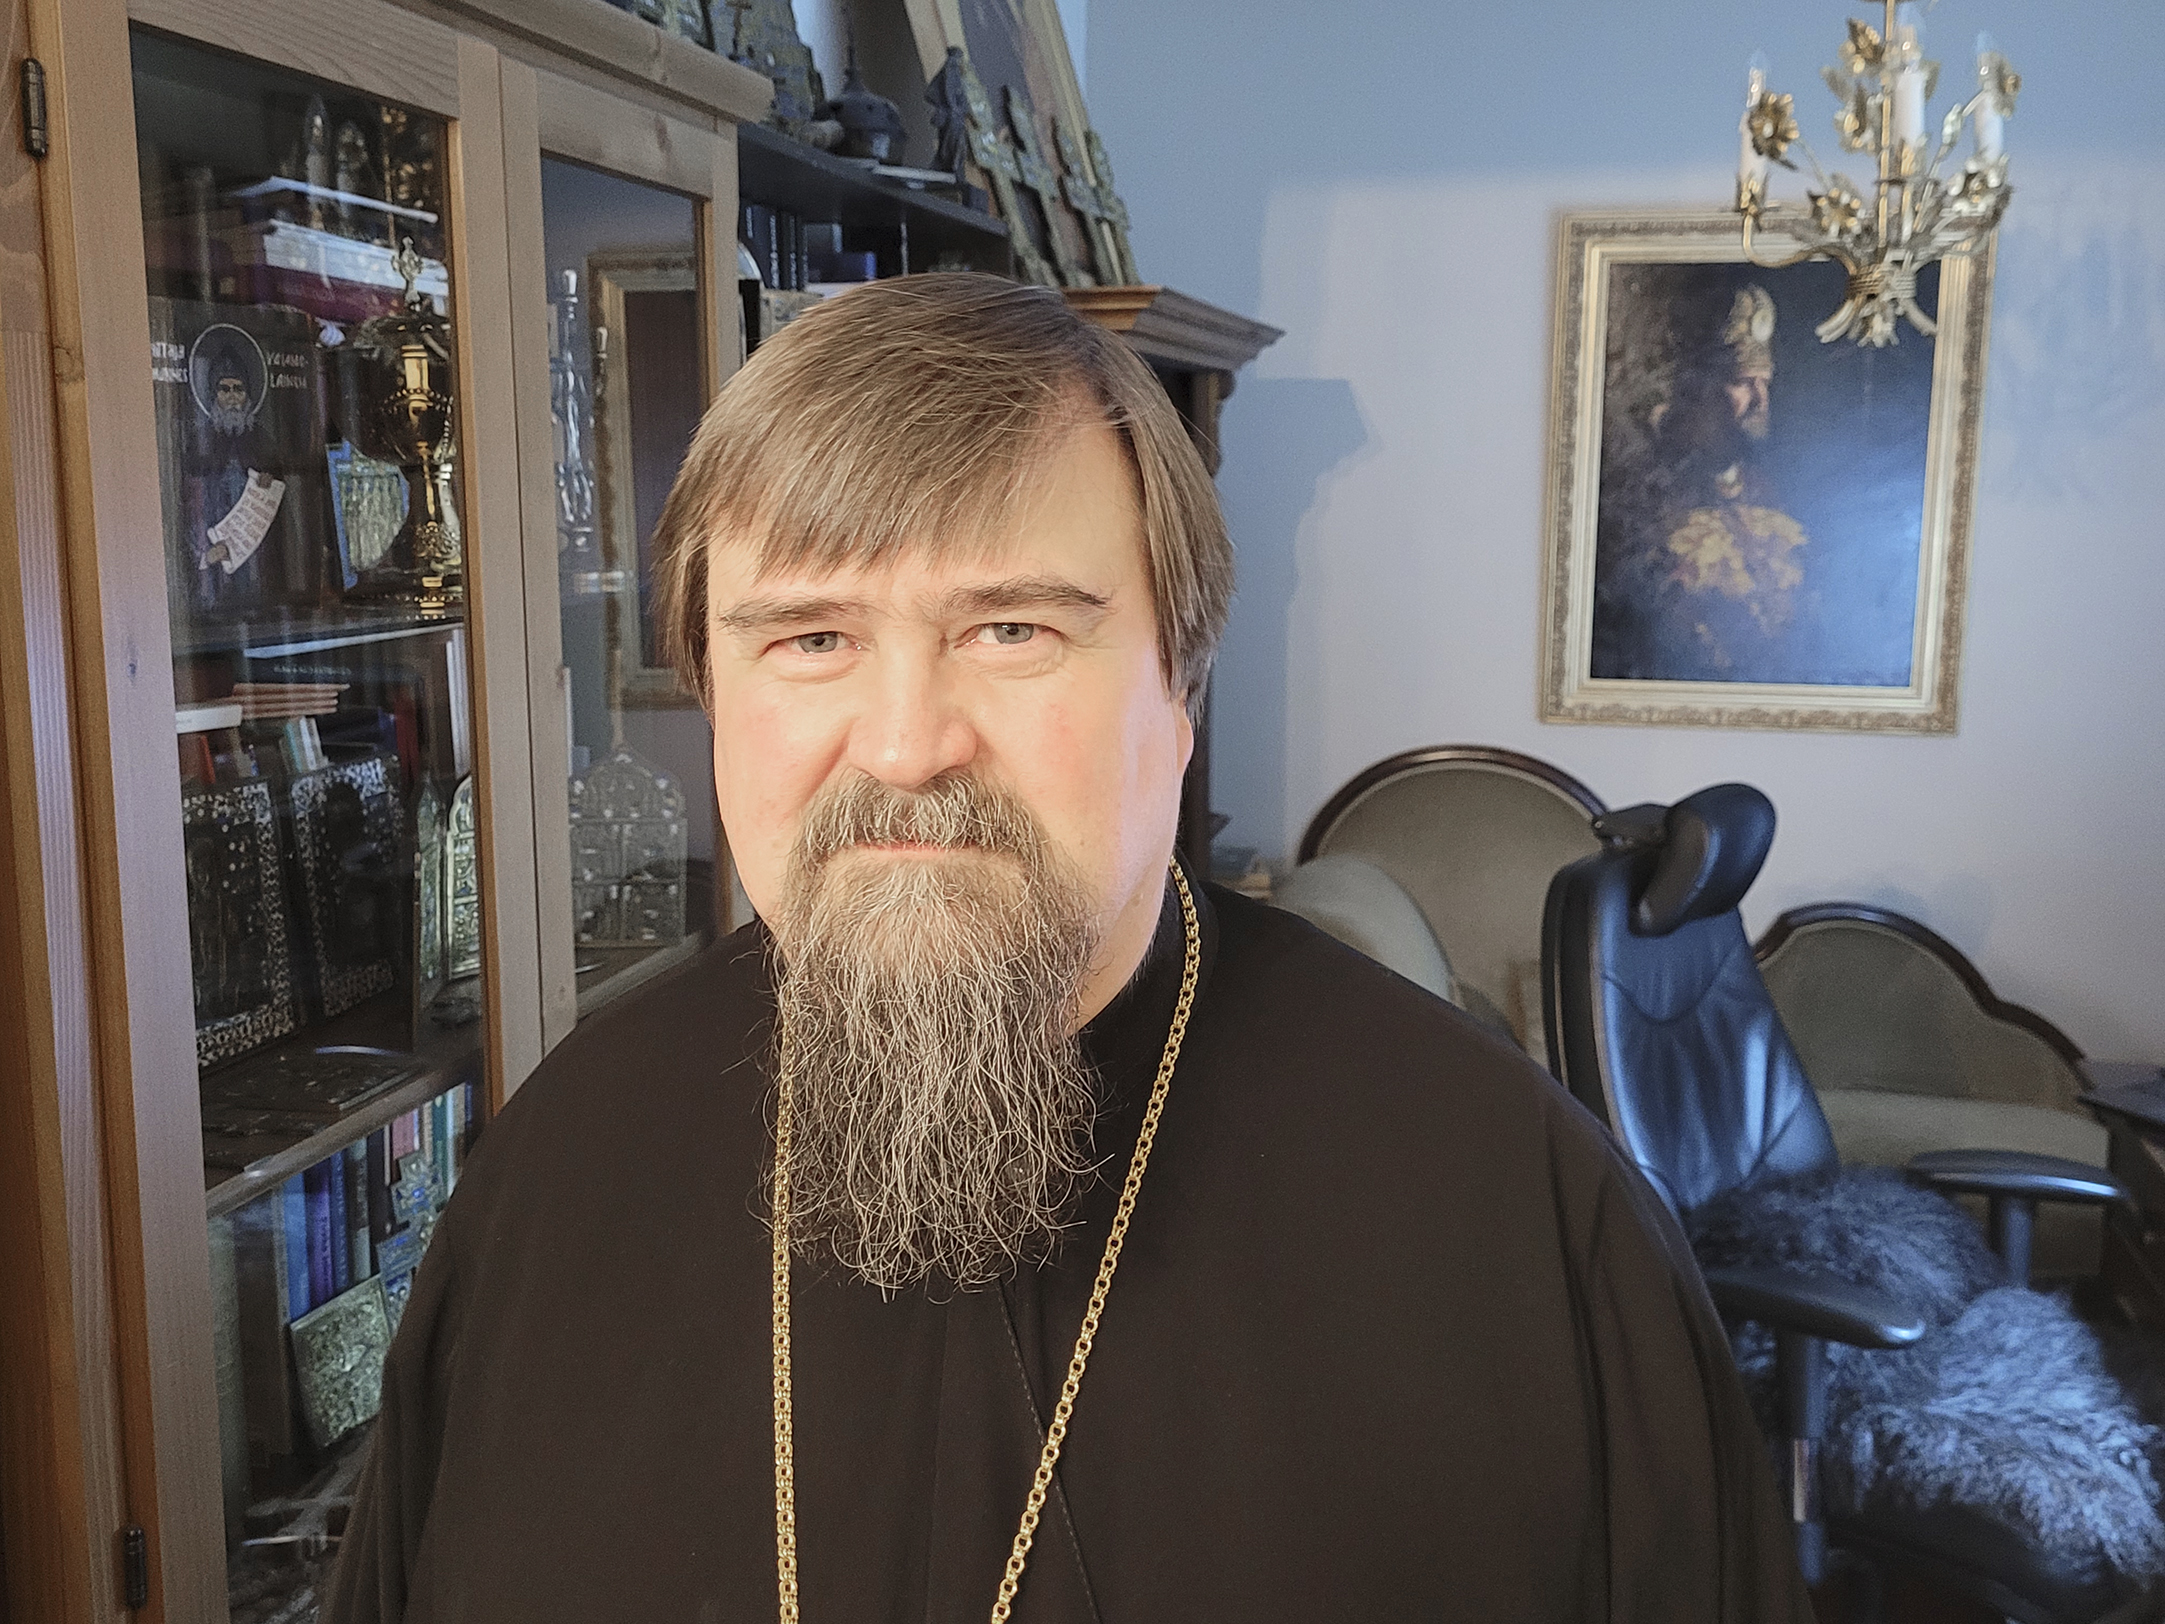 Suomen ortodoksikirkko rukoilee rauhaa Ukrainaan, ja piispa Sergei kiittelee suomalaisten auttamishalua: ”Jokaisen meistä tulisi olla rauhantekijä, ei sodan ja levottomuuden aiheuttaja”